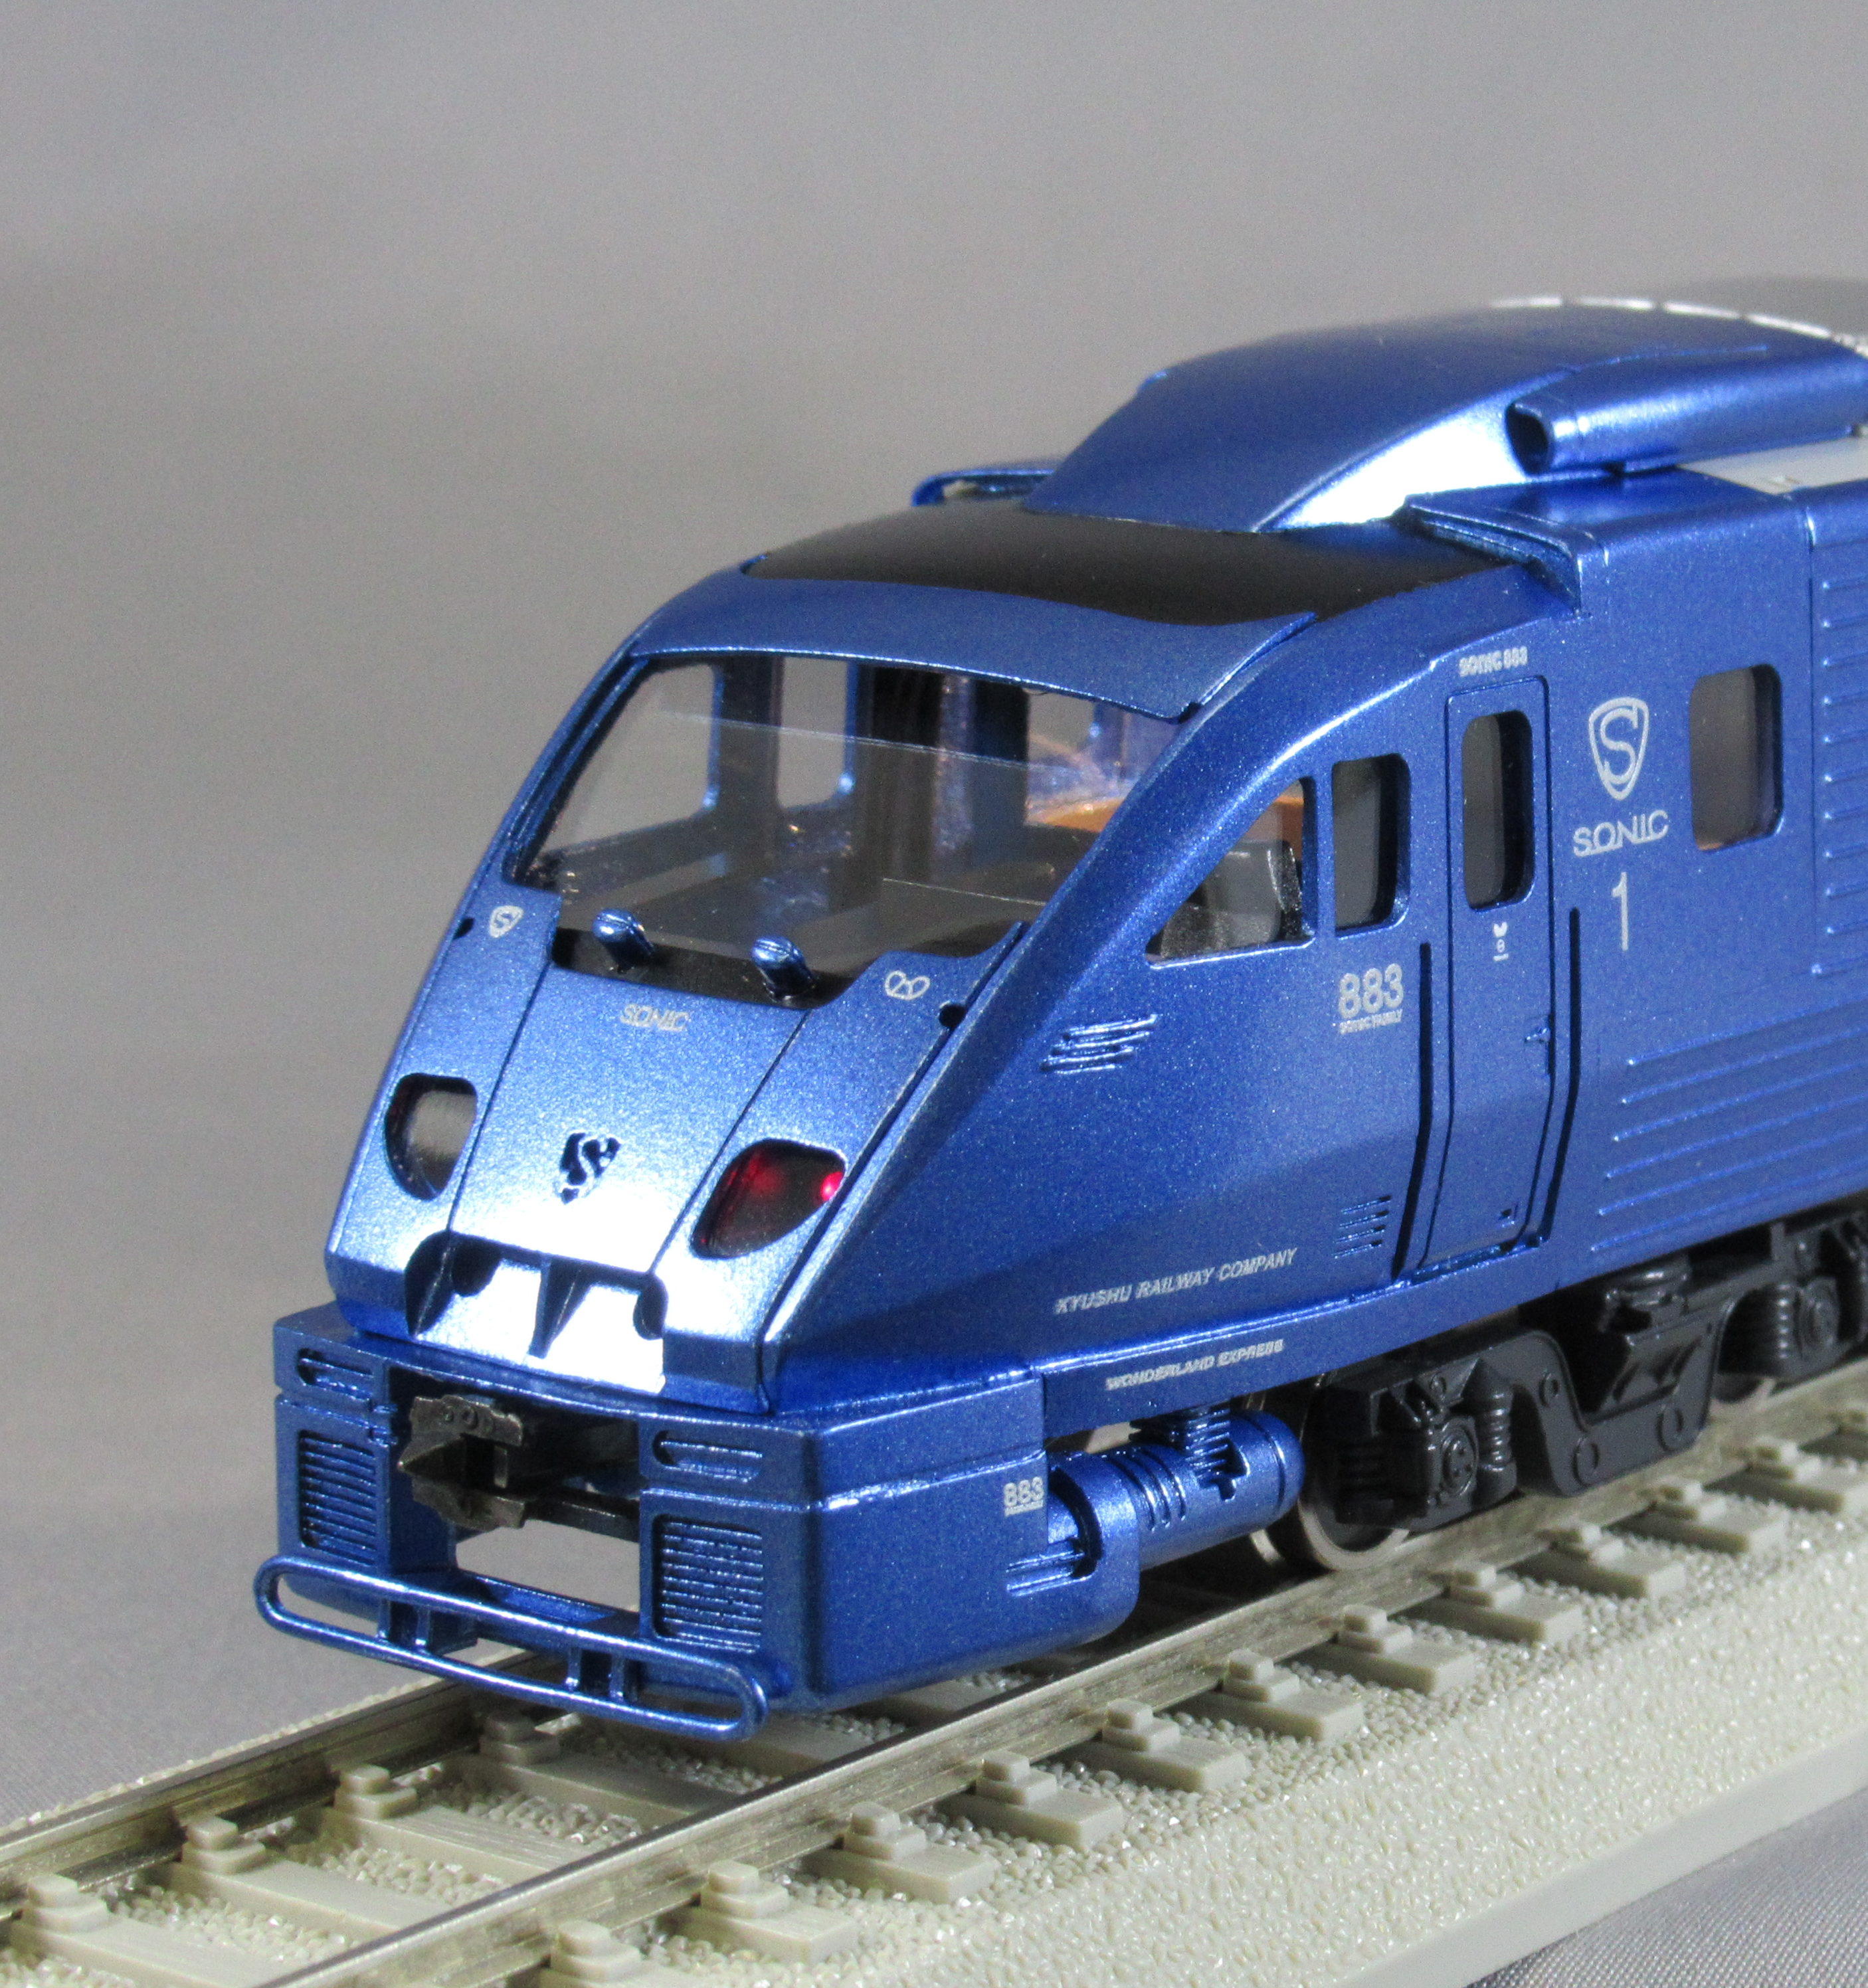 JR九州883系「ソニック」 - 鉄道模型の総合メーカー 株式会社エンドウ